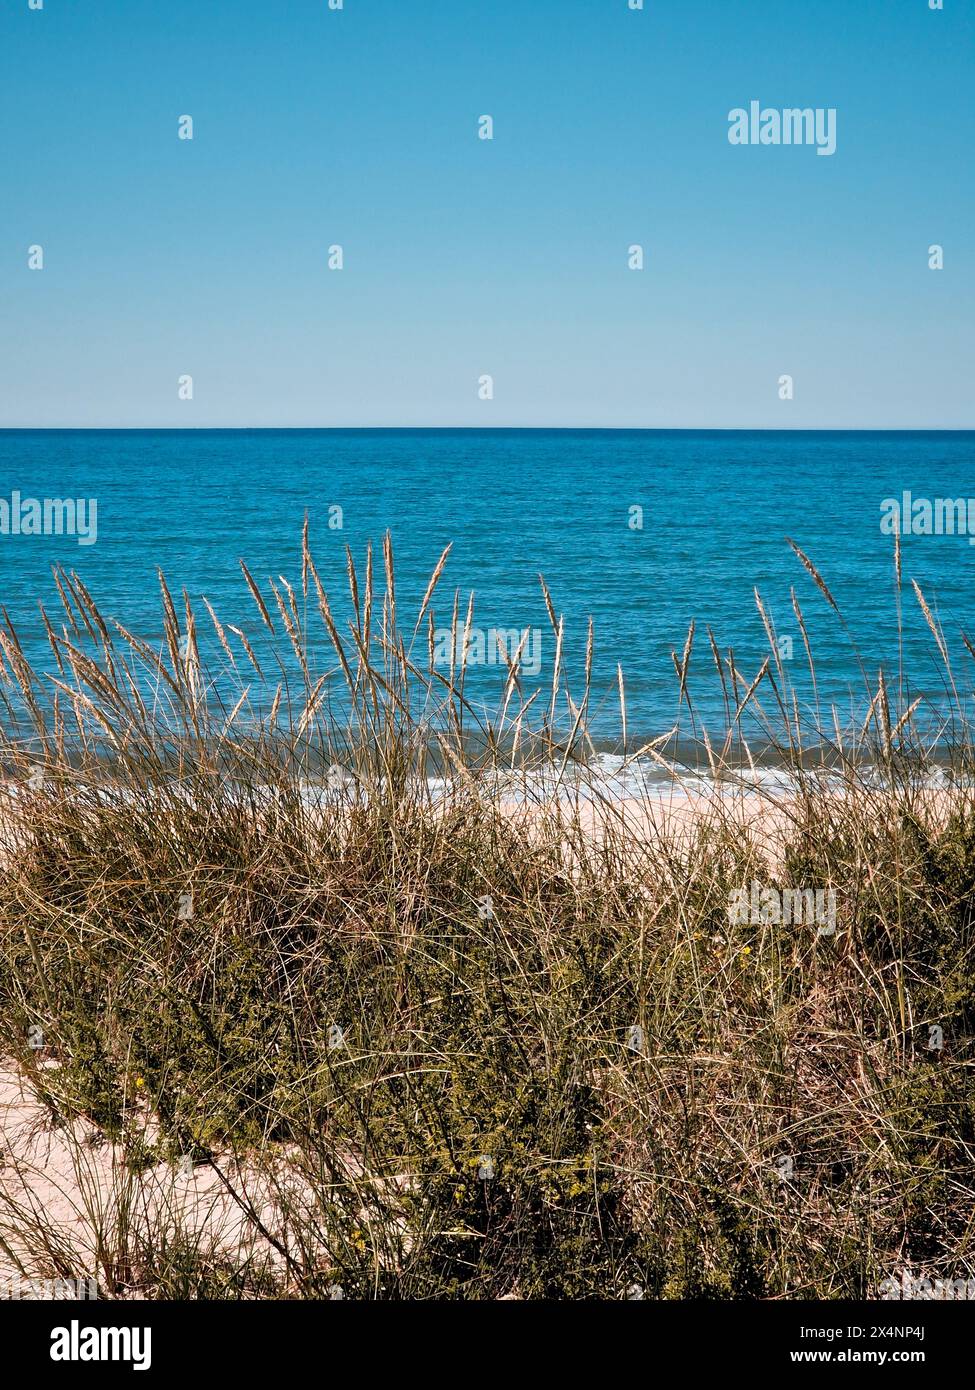 Paysage marin tranquille capturant la beauté sereine d'une plage déserte, encadrée par une douce dune de sable et une végétation luxuriante sous un ciel bleu clair Banque D'Images